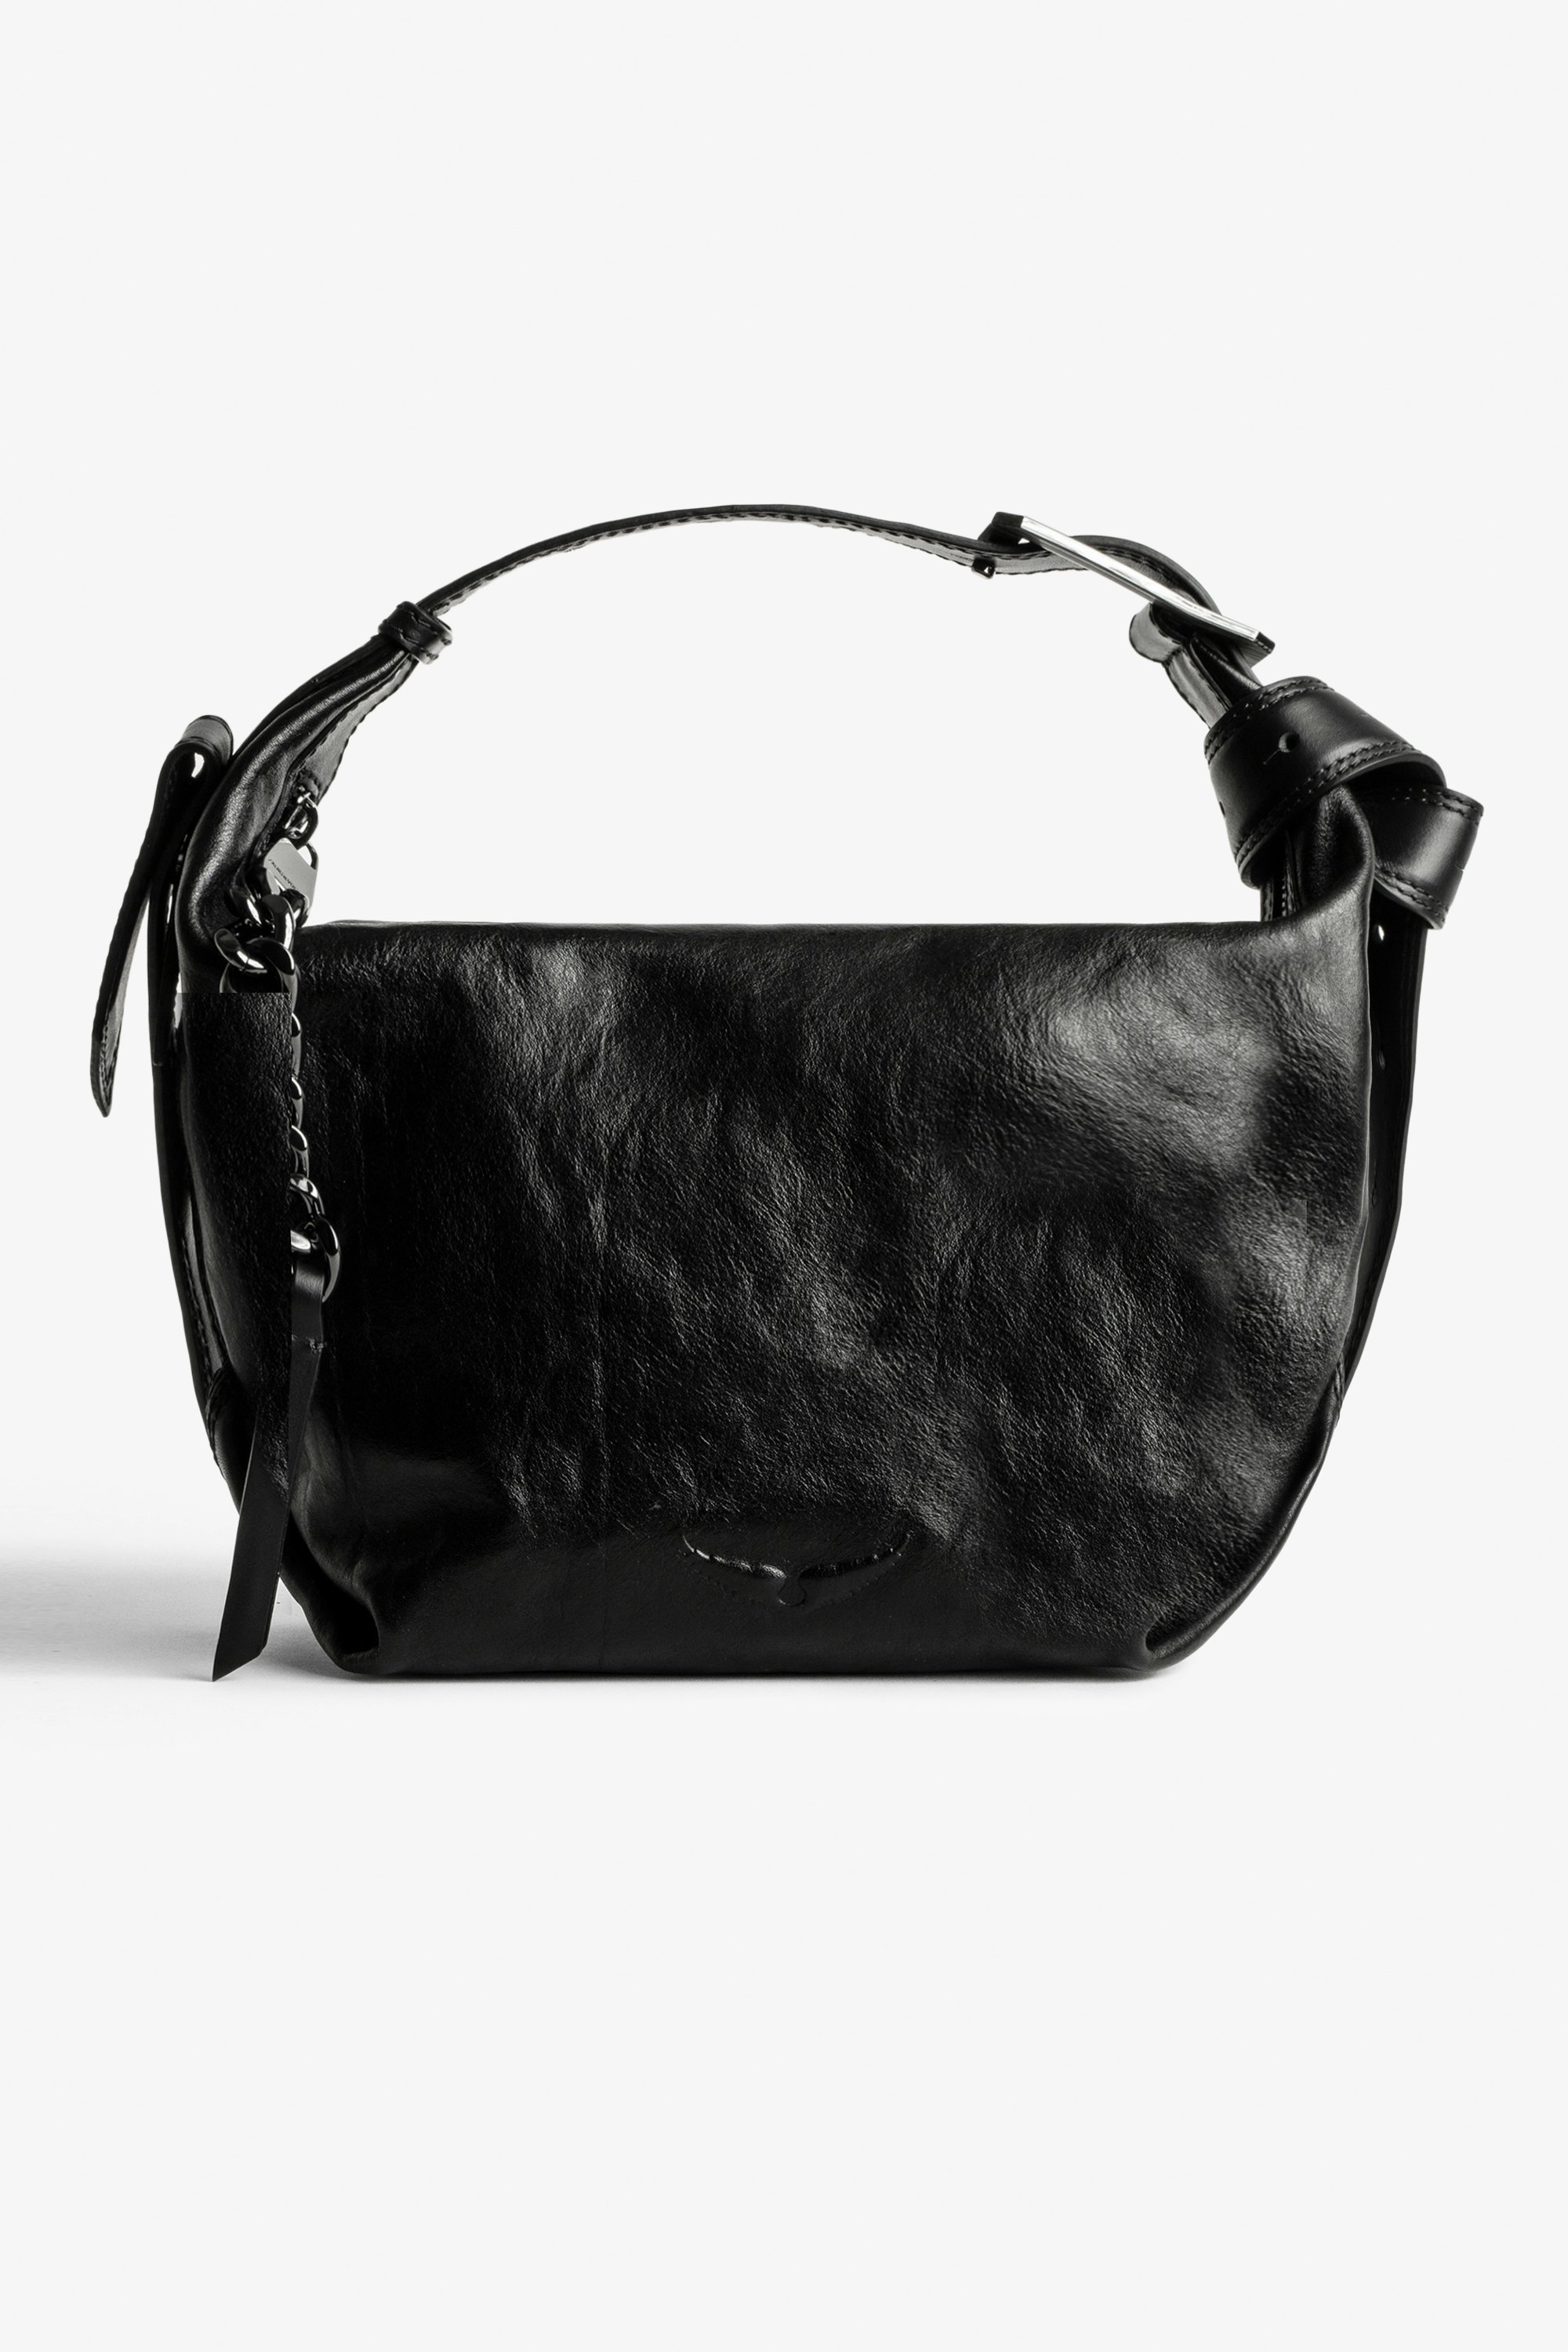 Le Cecilia Bag  Le Cecilia women’s iconic vegetable-tanned Italian leather bag.